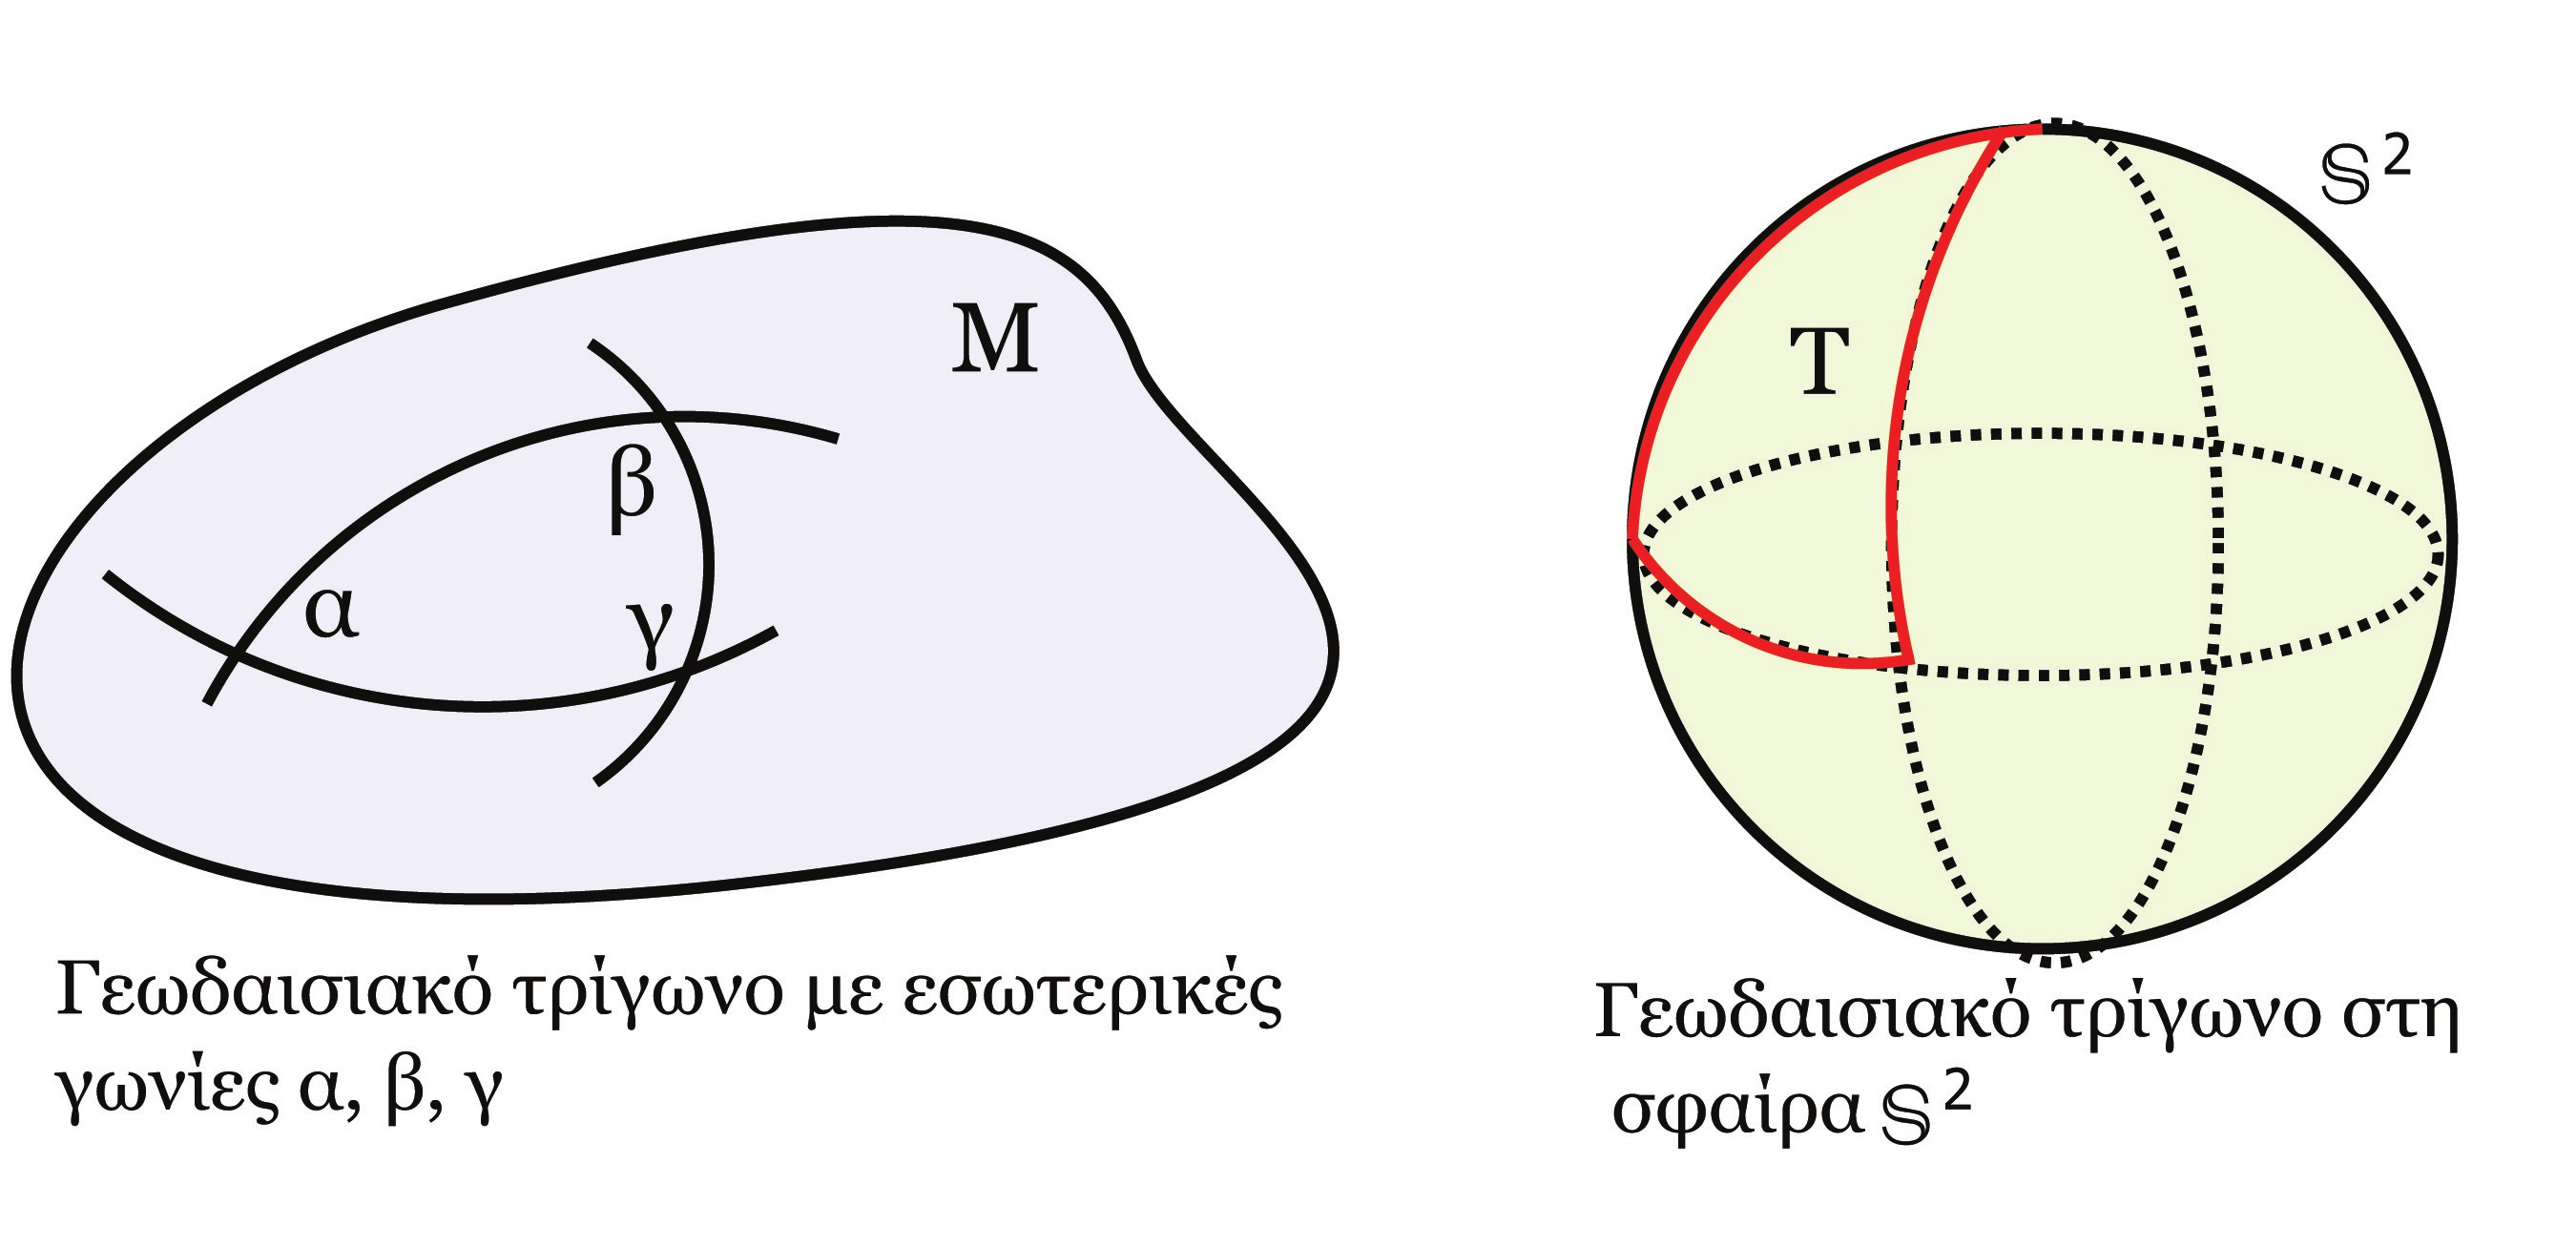 2 Το Θεώρημα Gauss-Bonnet της μορφής fda, όπου da το στοιχειώδες εμβαδό στο U.